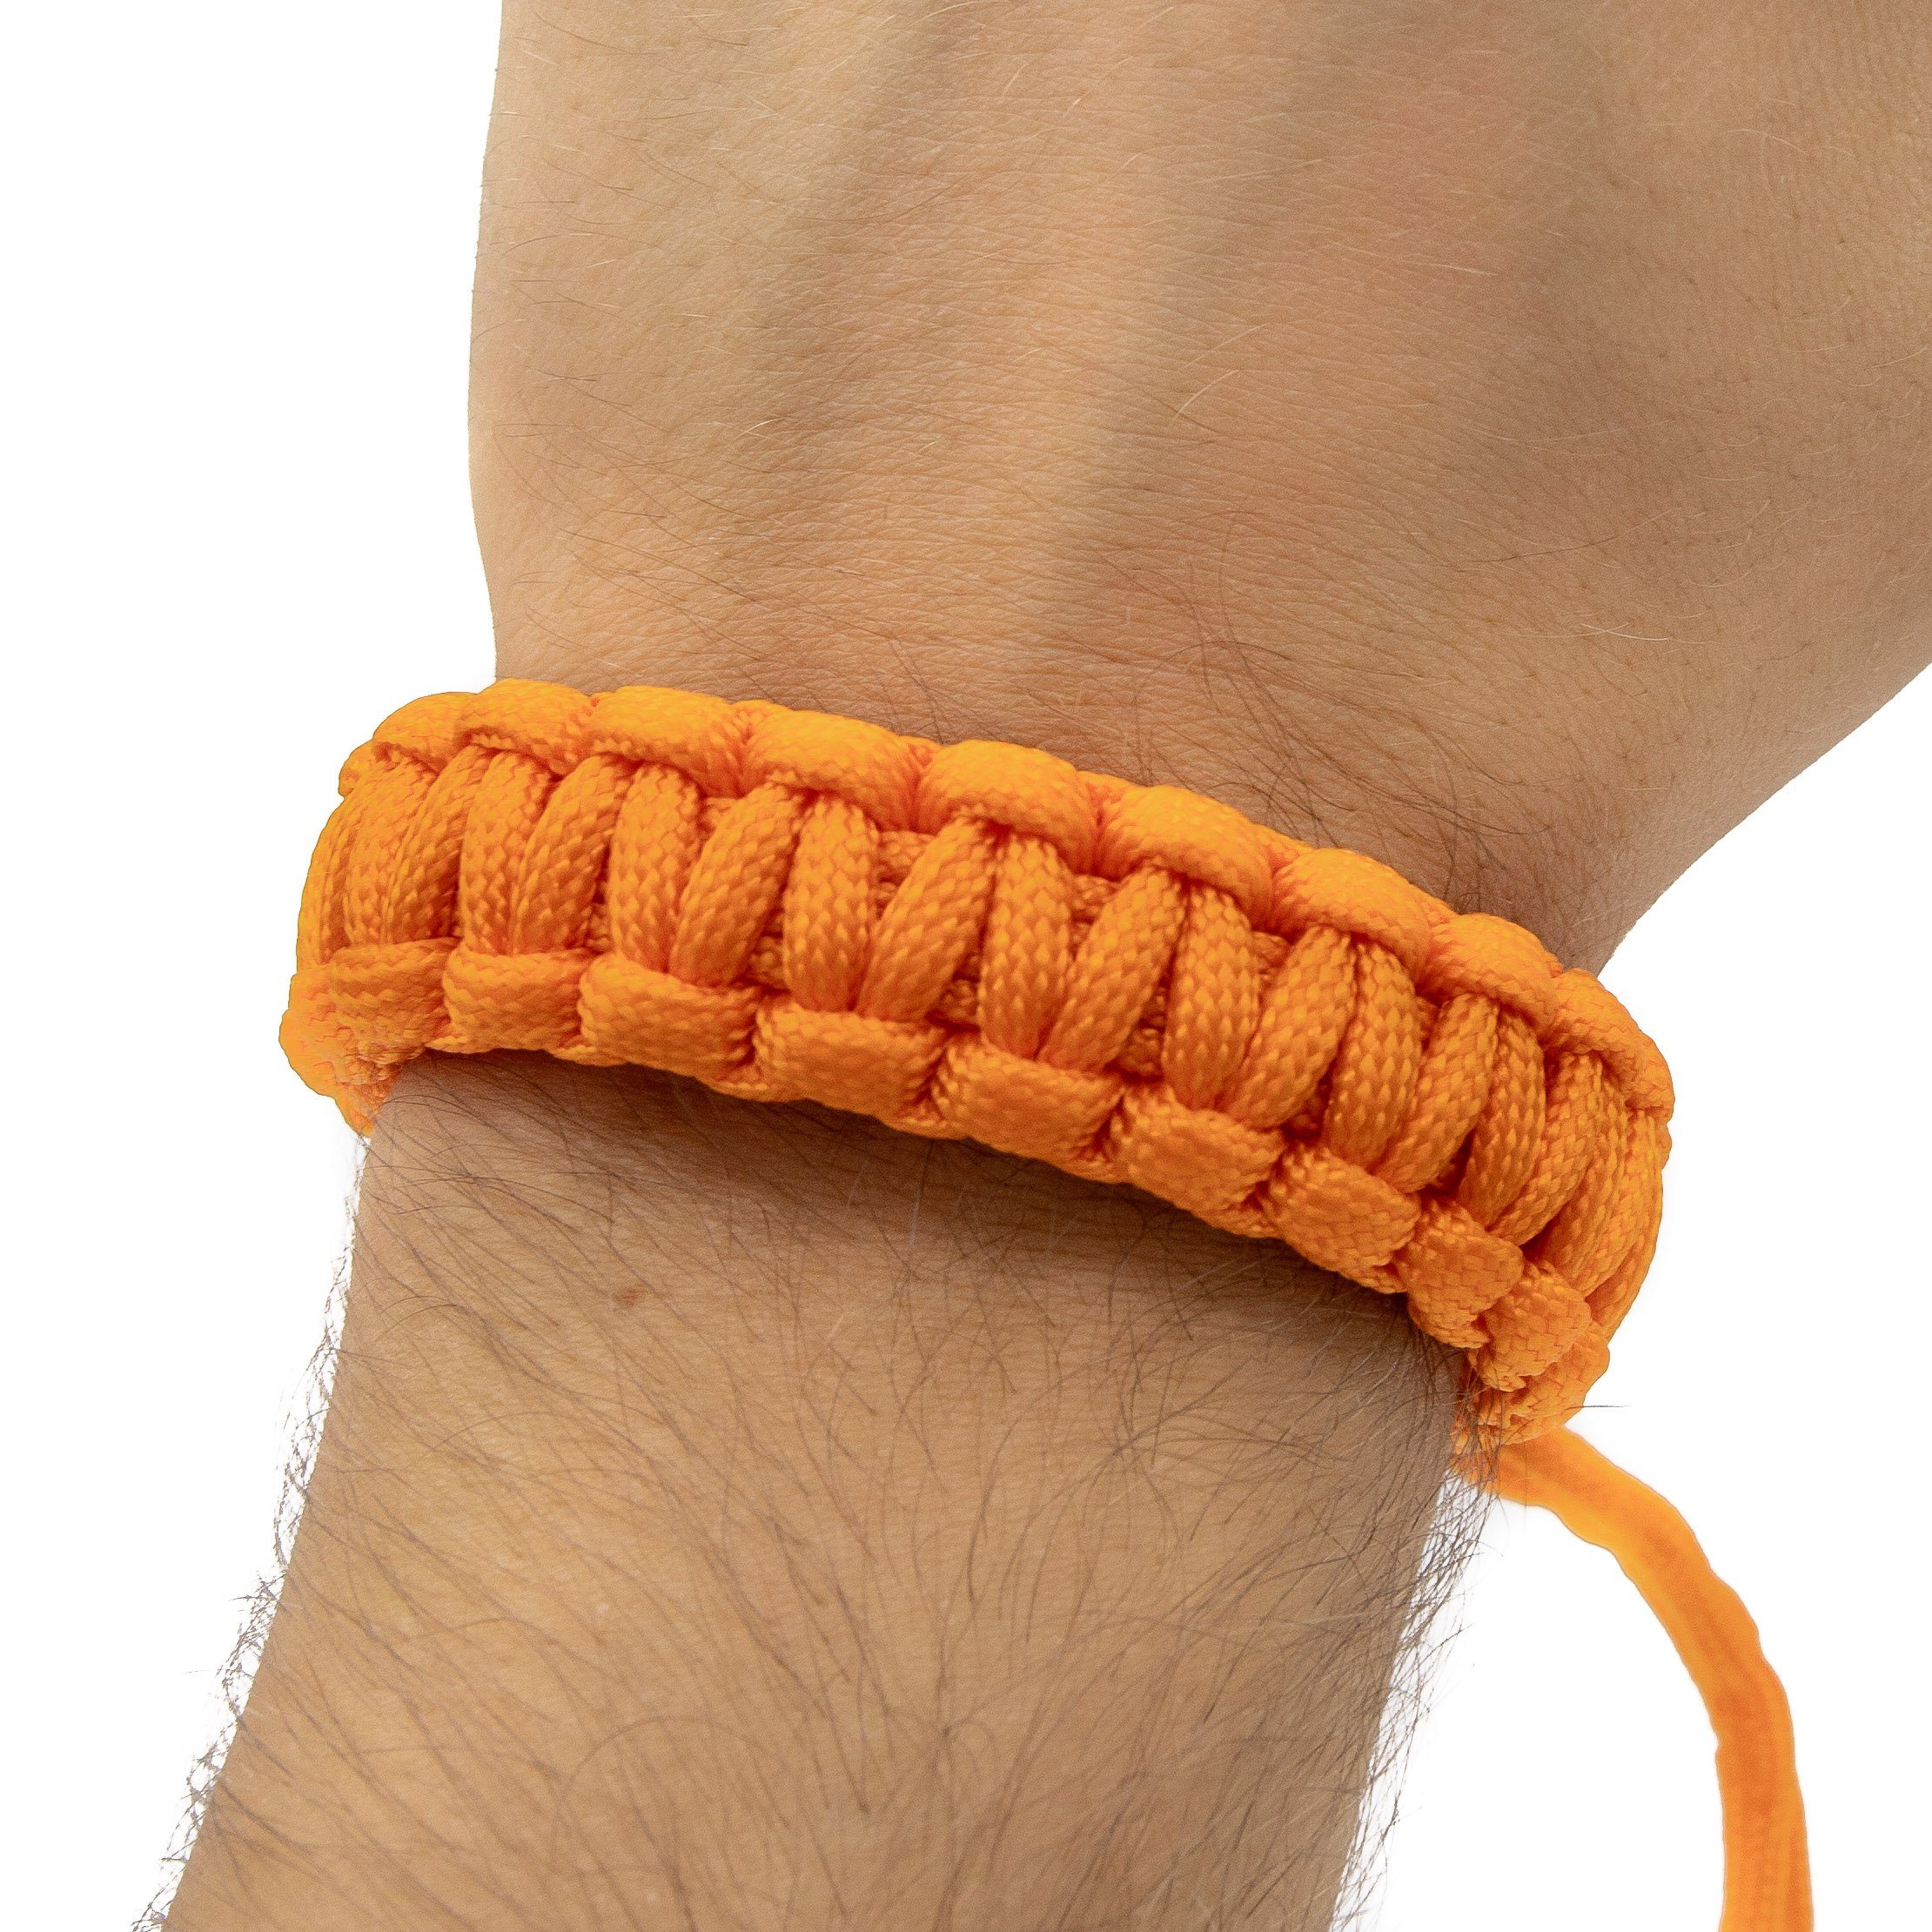 Lens-Aid Kamerazubehör-Set Handschlaufe für Wrist-Band Kordel Orange Tragen Paracord DSLR Tragegurt. am Kamera: Kameragurt zum Handgelenk